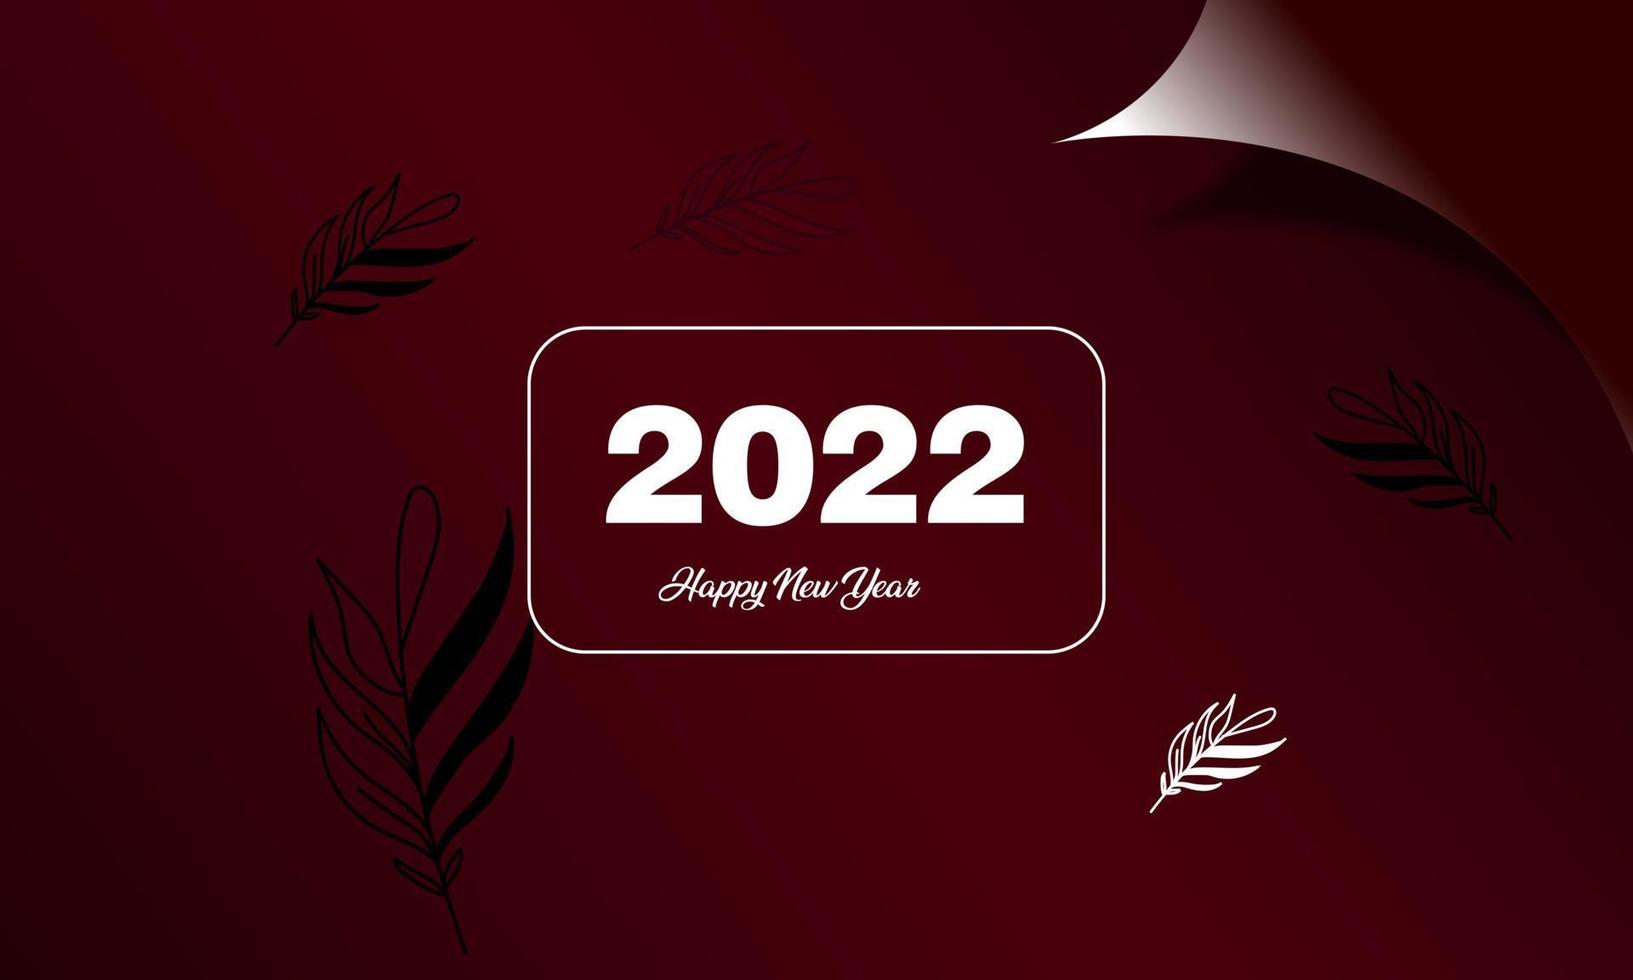 2022 gott nytt år svart och färgglad reklamaffisch eller banderoll med öppet presentpapper. ändra eller öppna konceptet för nyår 2022 med eleganta färger vektor